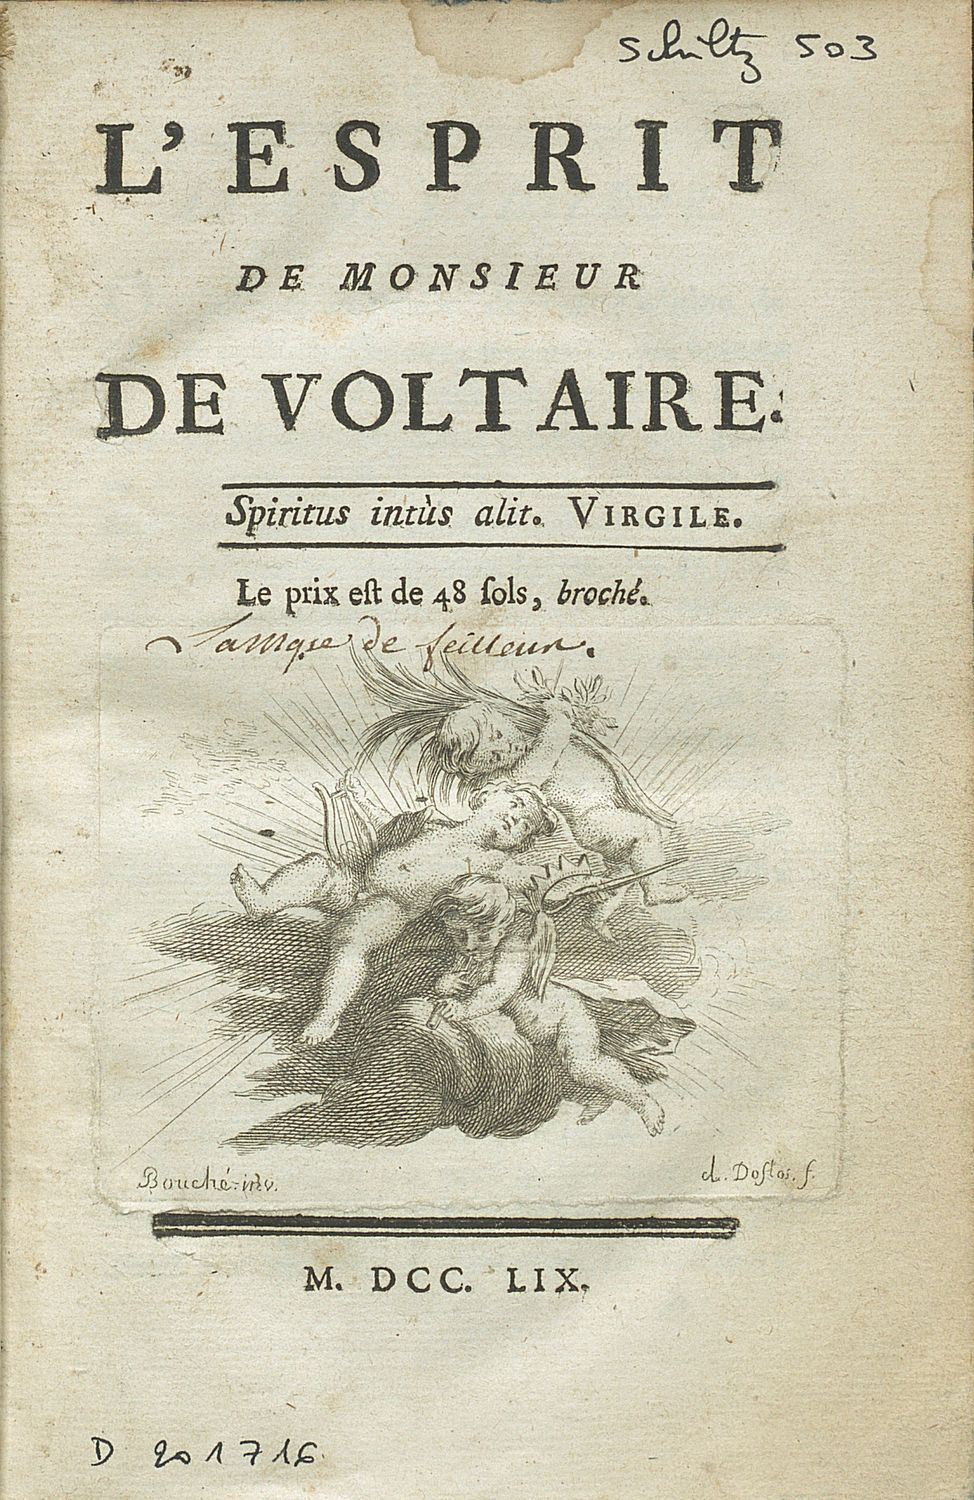 •	L'esprit de Monsieur de Voltaire. (titre)